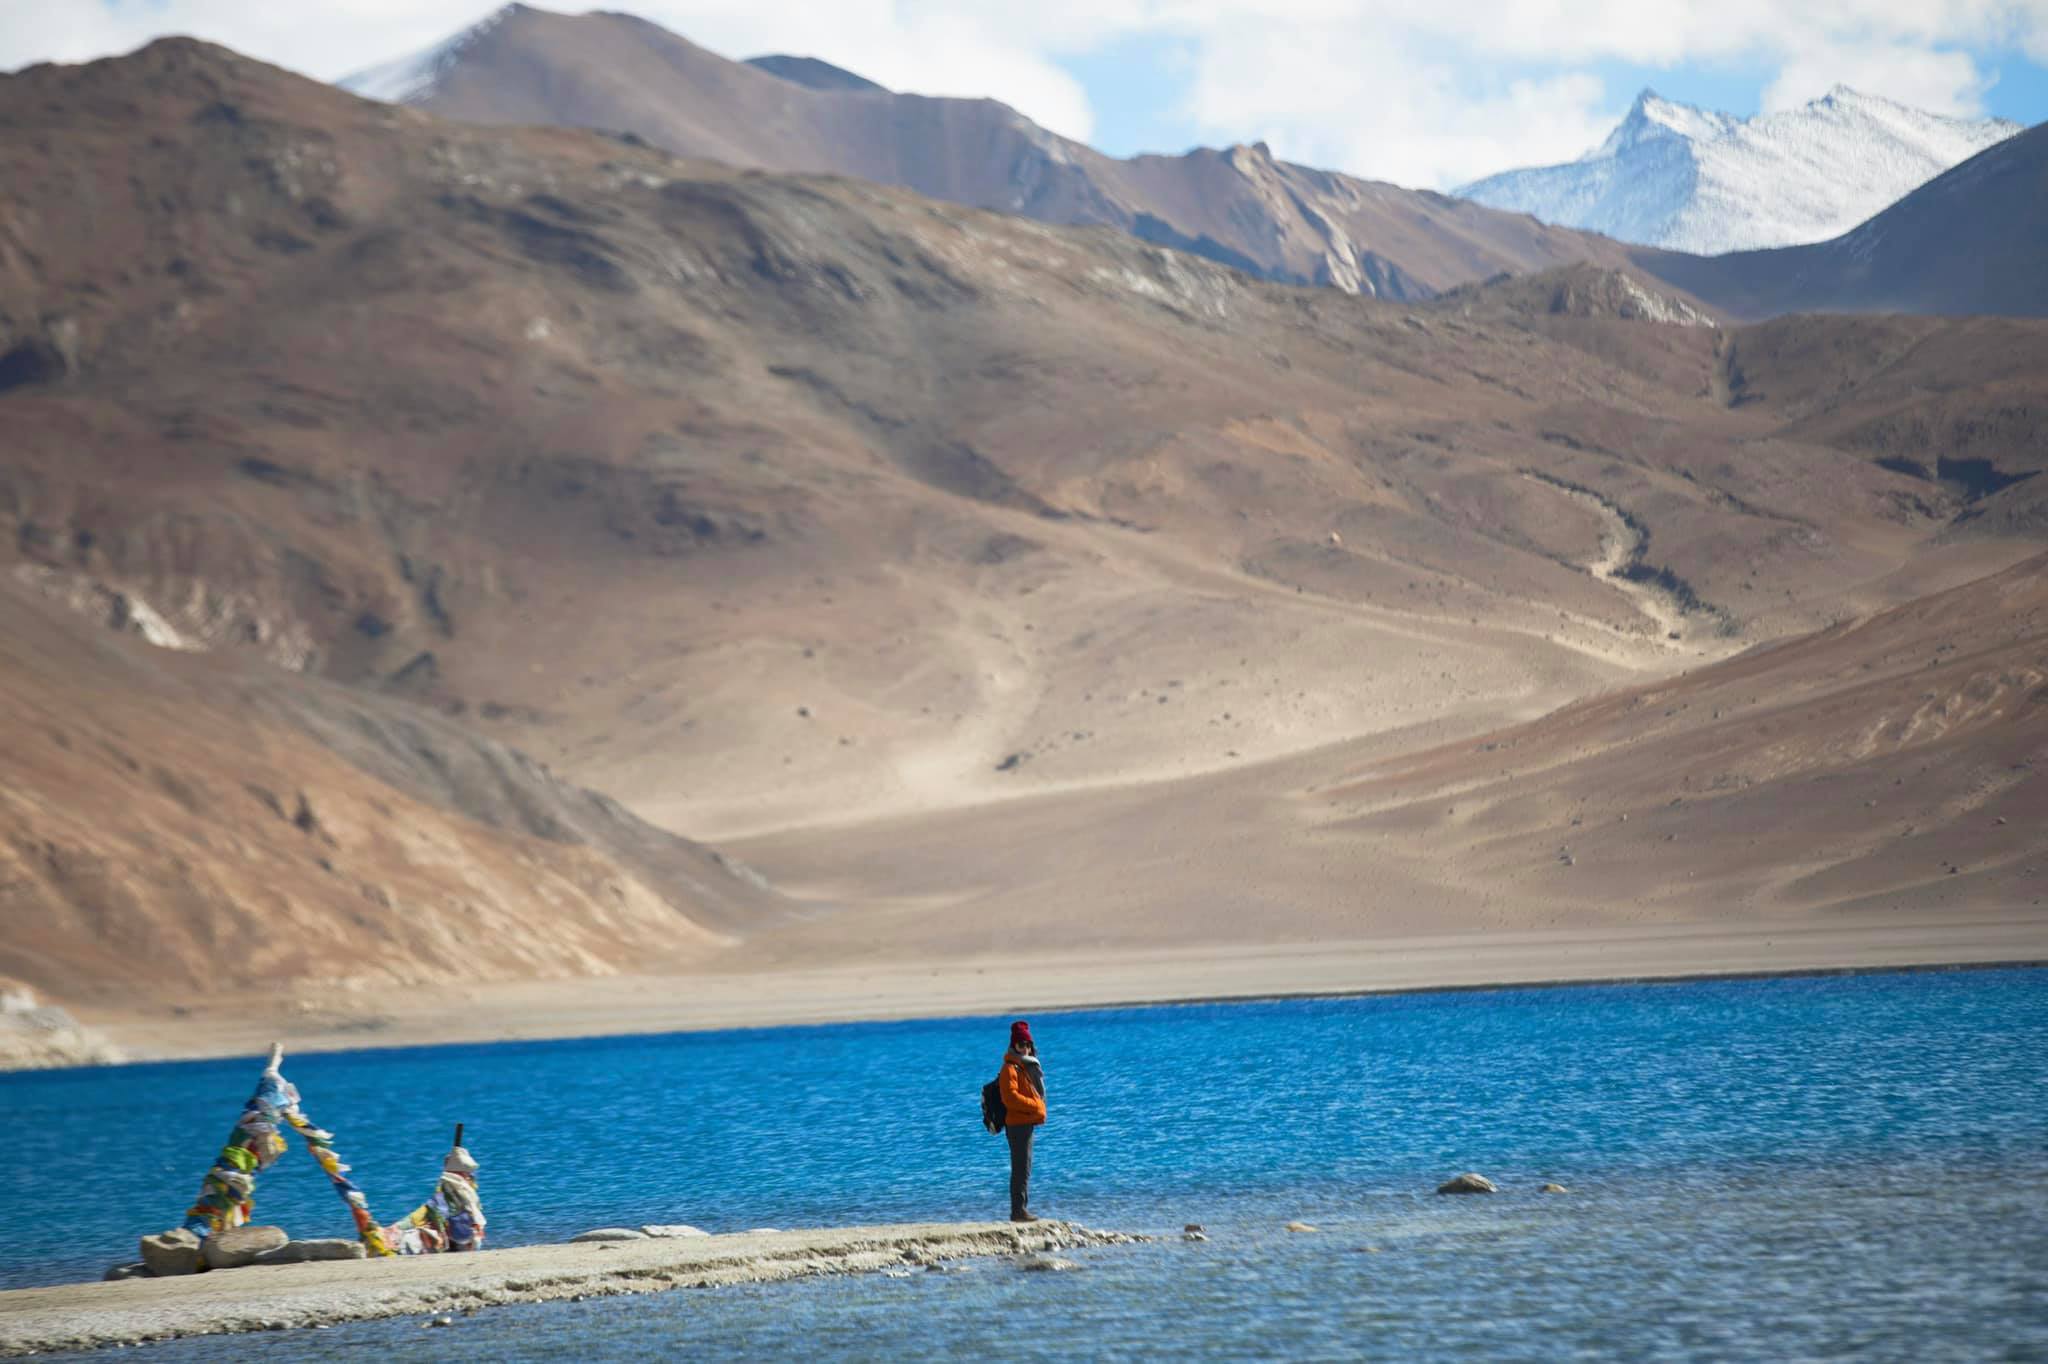 Ladakh – Thiên đường nằm ở phía Bắc Ấn Độ, nơi mang lại những trải nghiệm tuyệt vời cho những ai tìm đến. Hãy cùng chiêm ngưỡng những hình ảnh đẹp như mơ của Ladakh và khám phá vẻ đẹp thiên nhiên tuyệt vời của đất nước này.